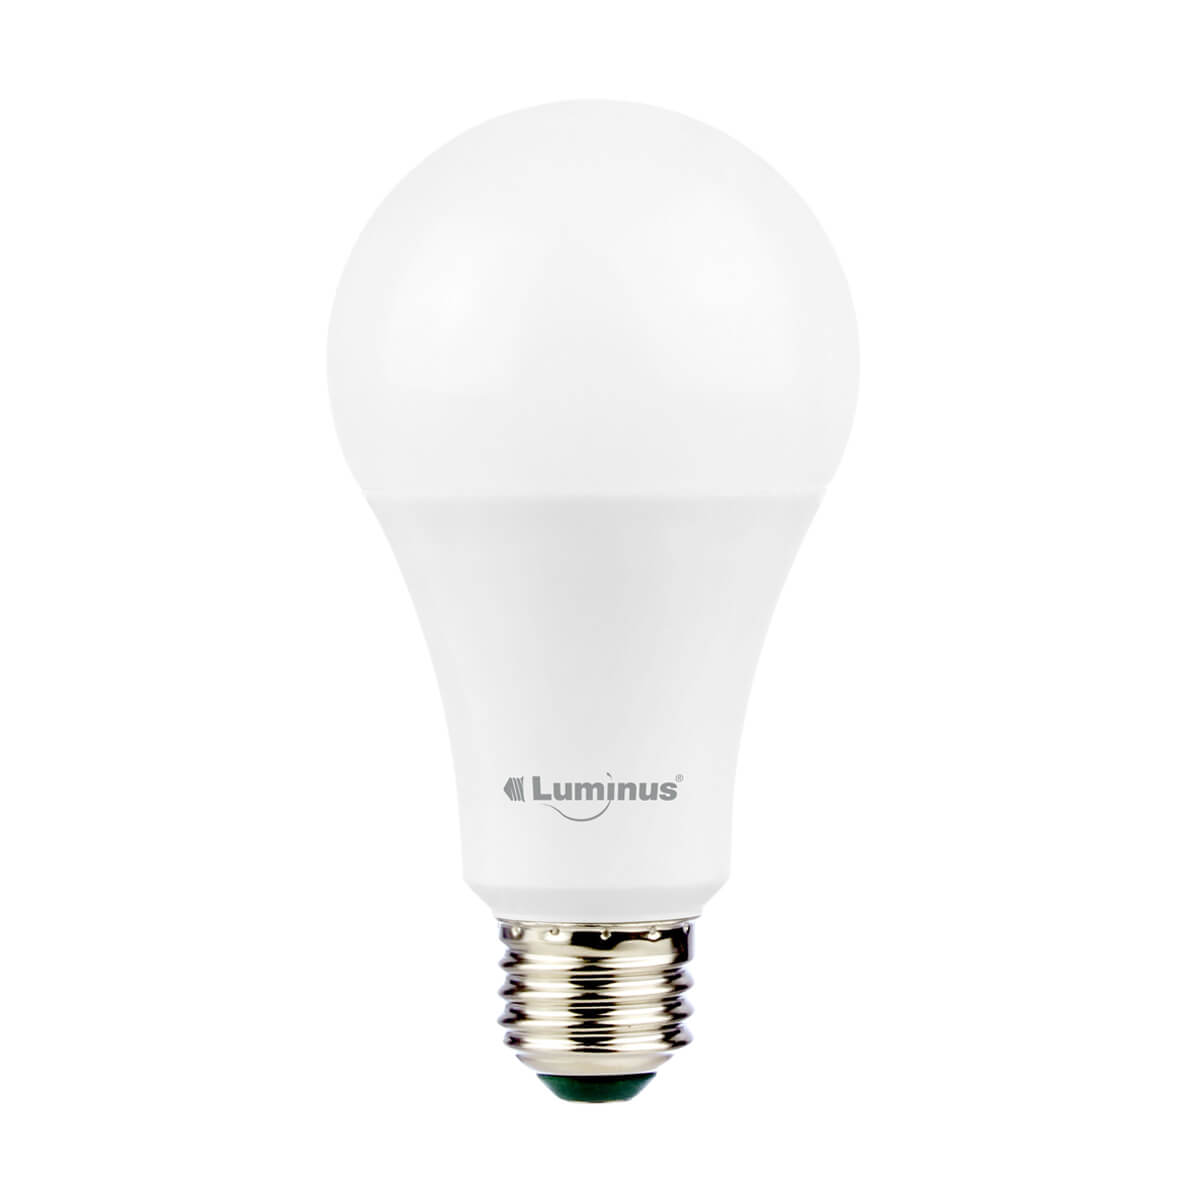 Luminus LED - 14.5W A21 - 2 Pack